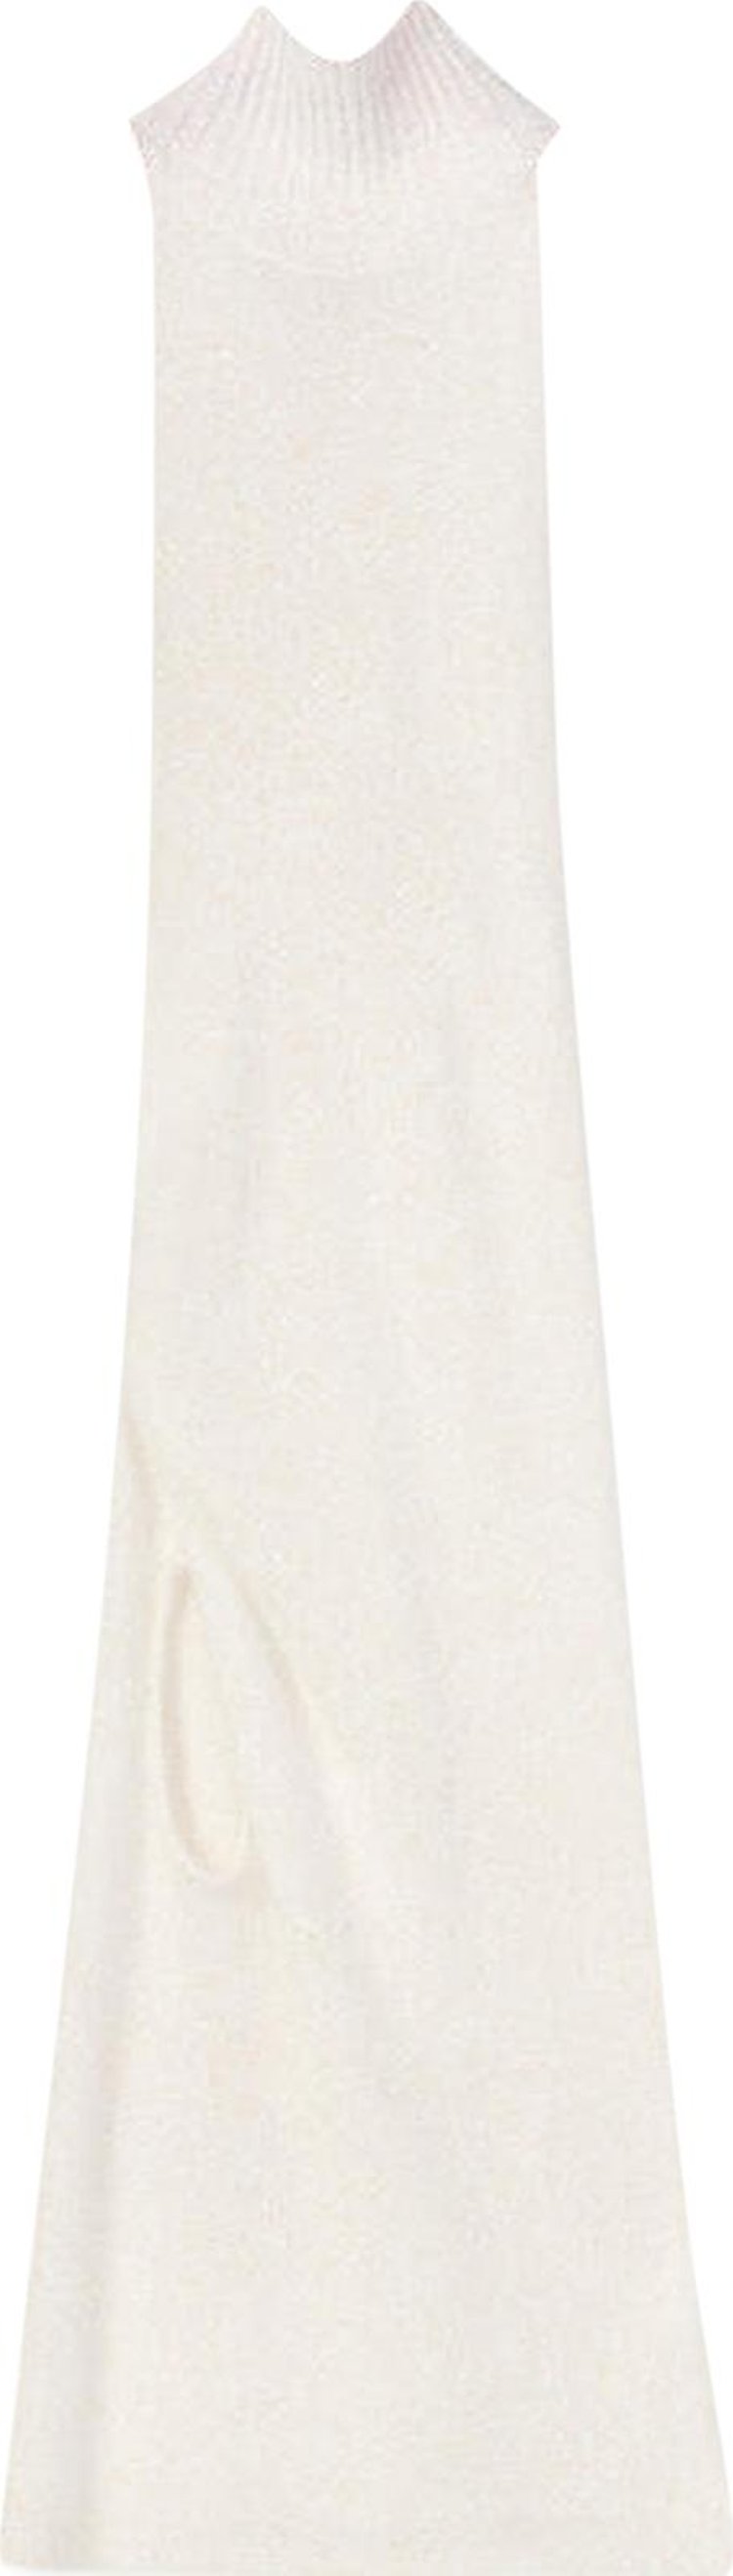 Loewe Cut Out Knit Dress 'Optic White'